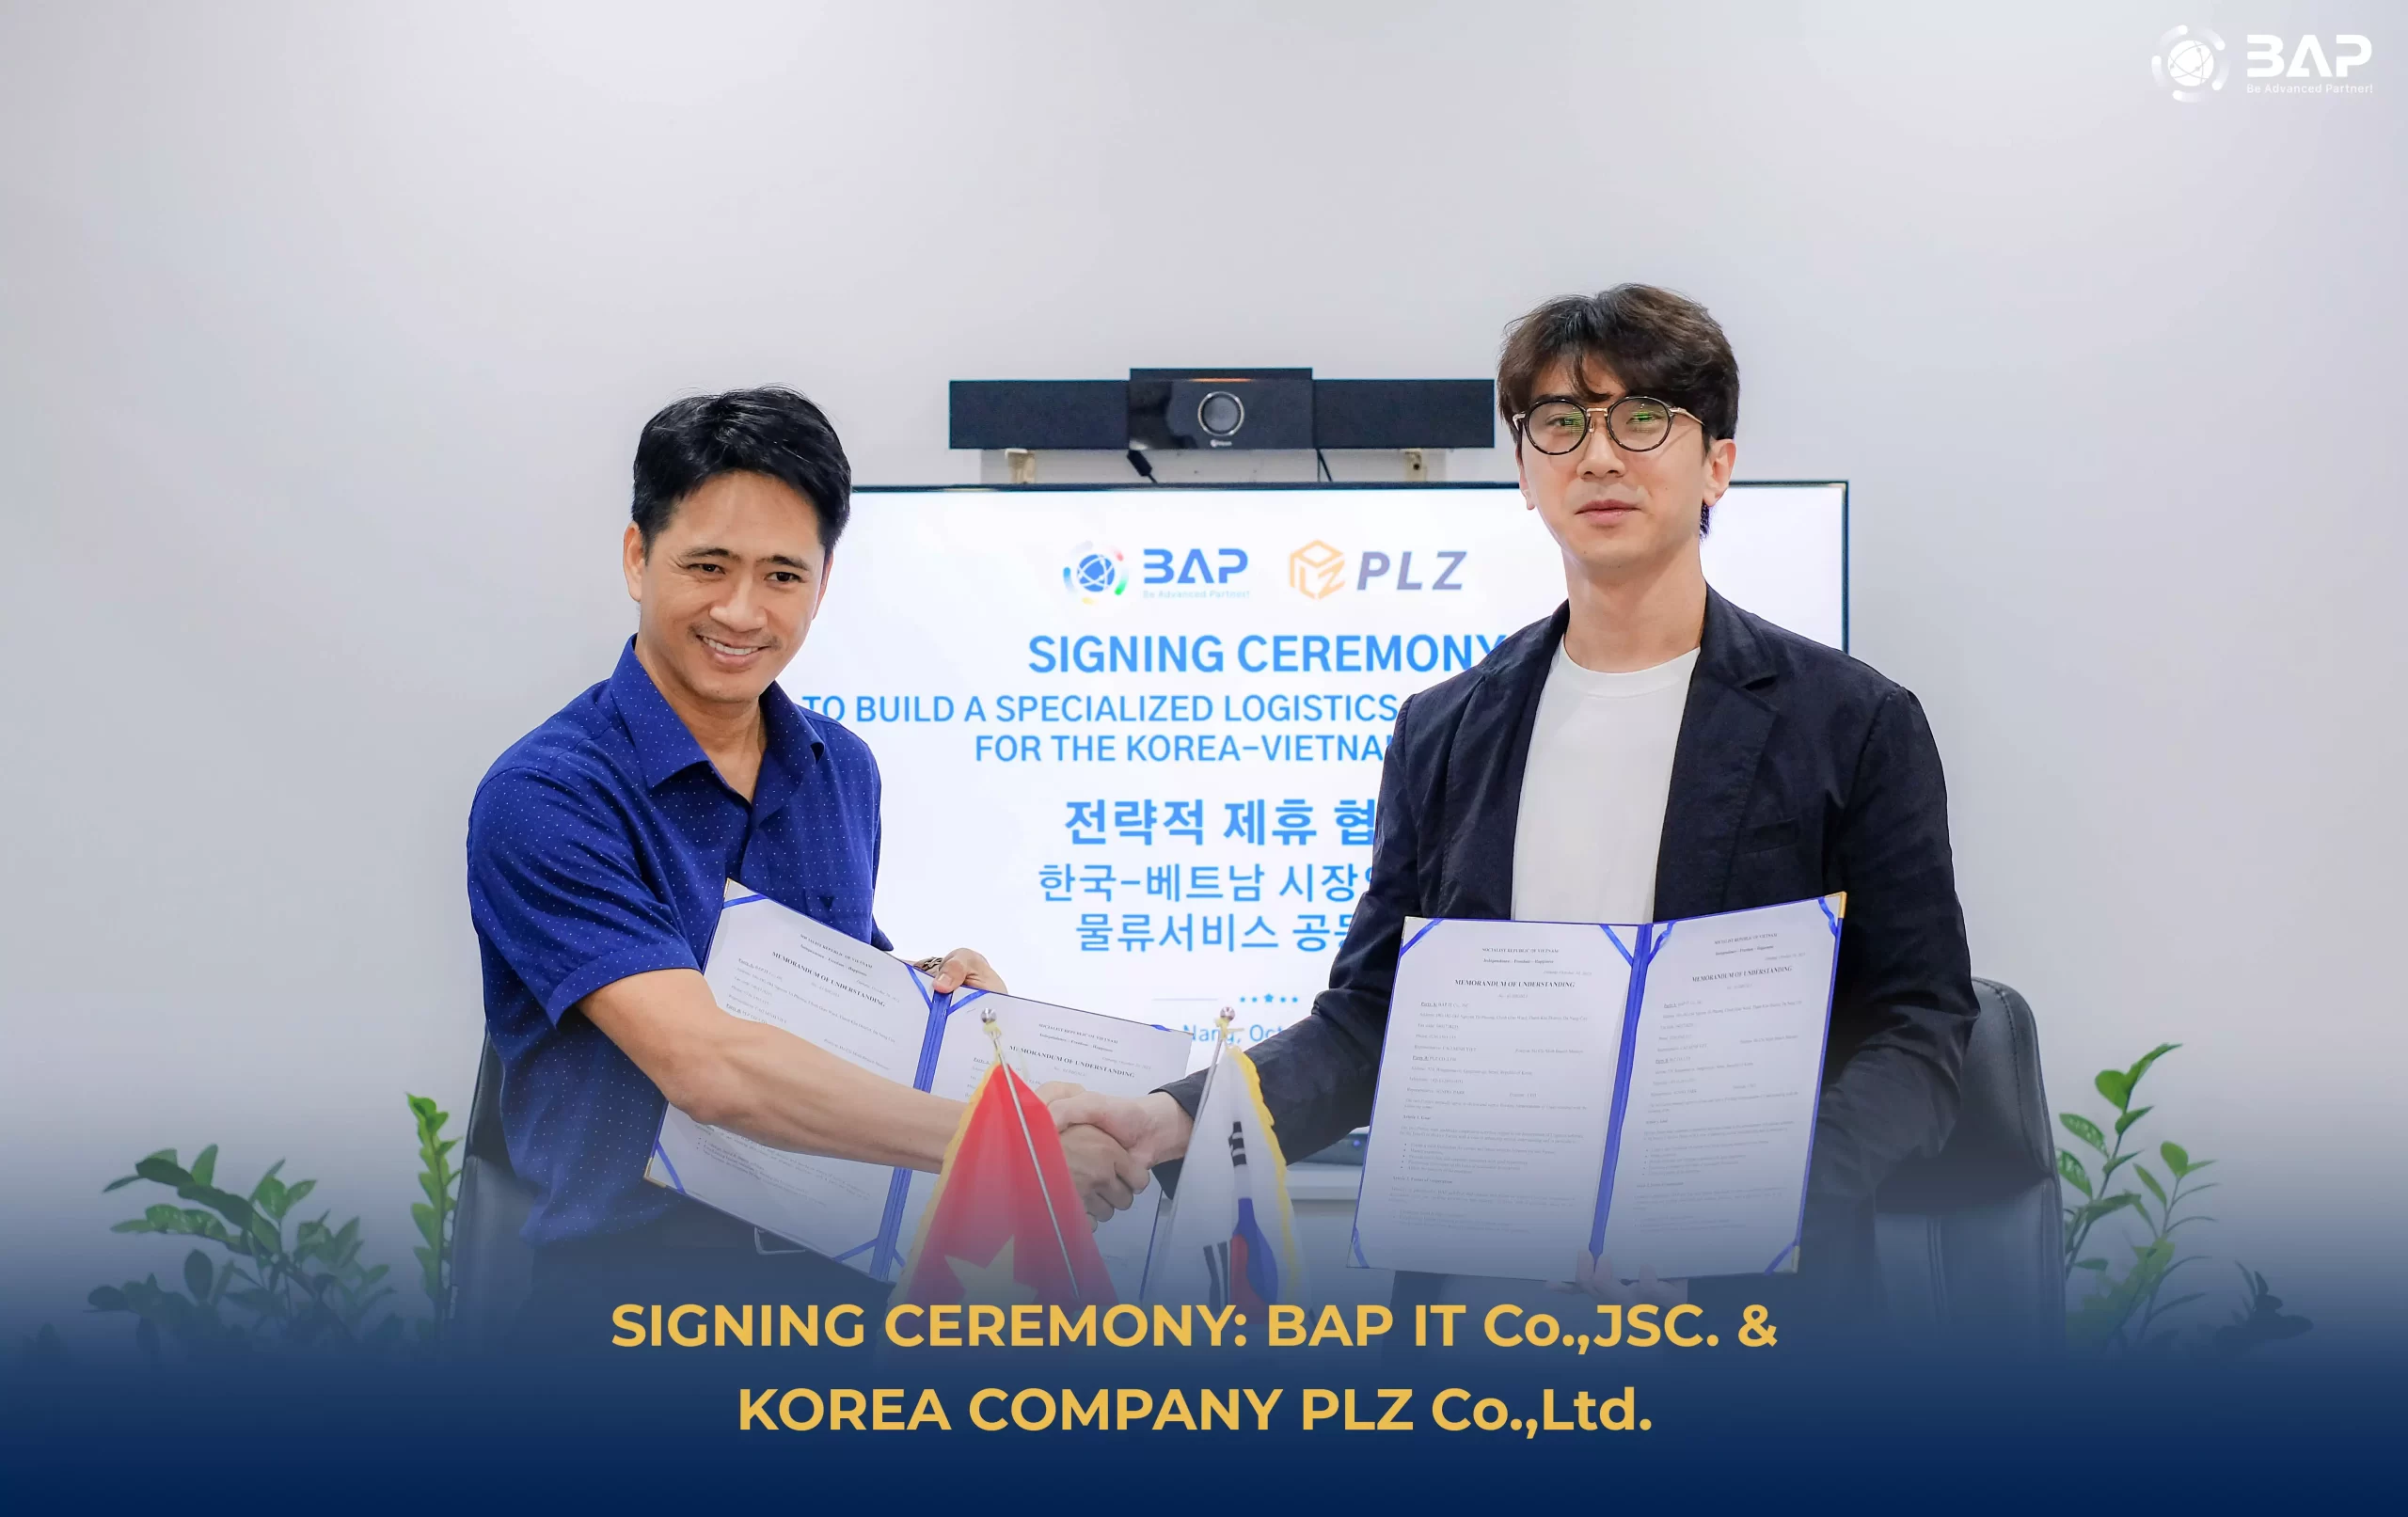 サイニングセレモニー: BAP & PLZ、韓国 – ベトナム市場向けの専門のロジスティクスサービスソリューションを構築